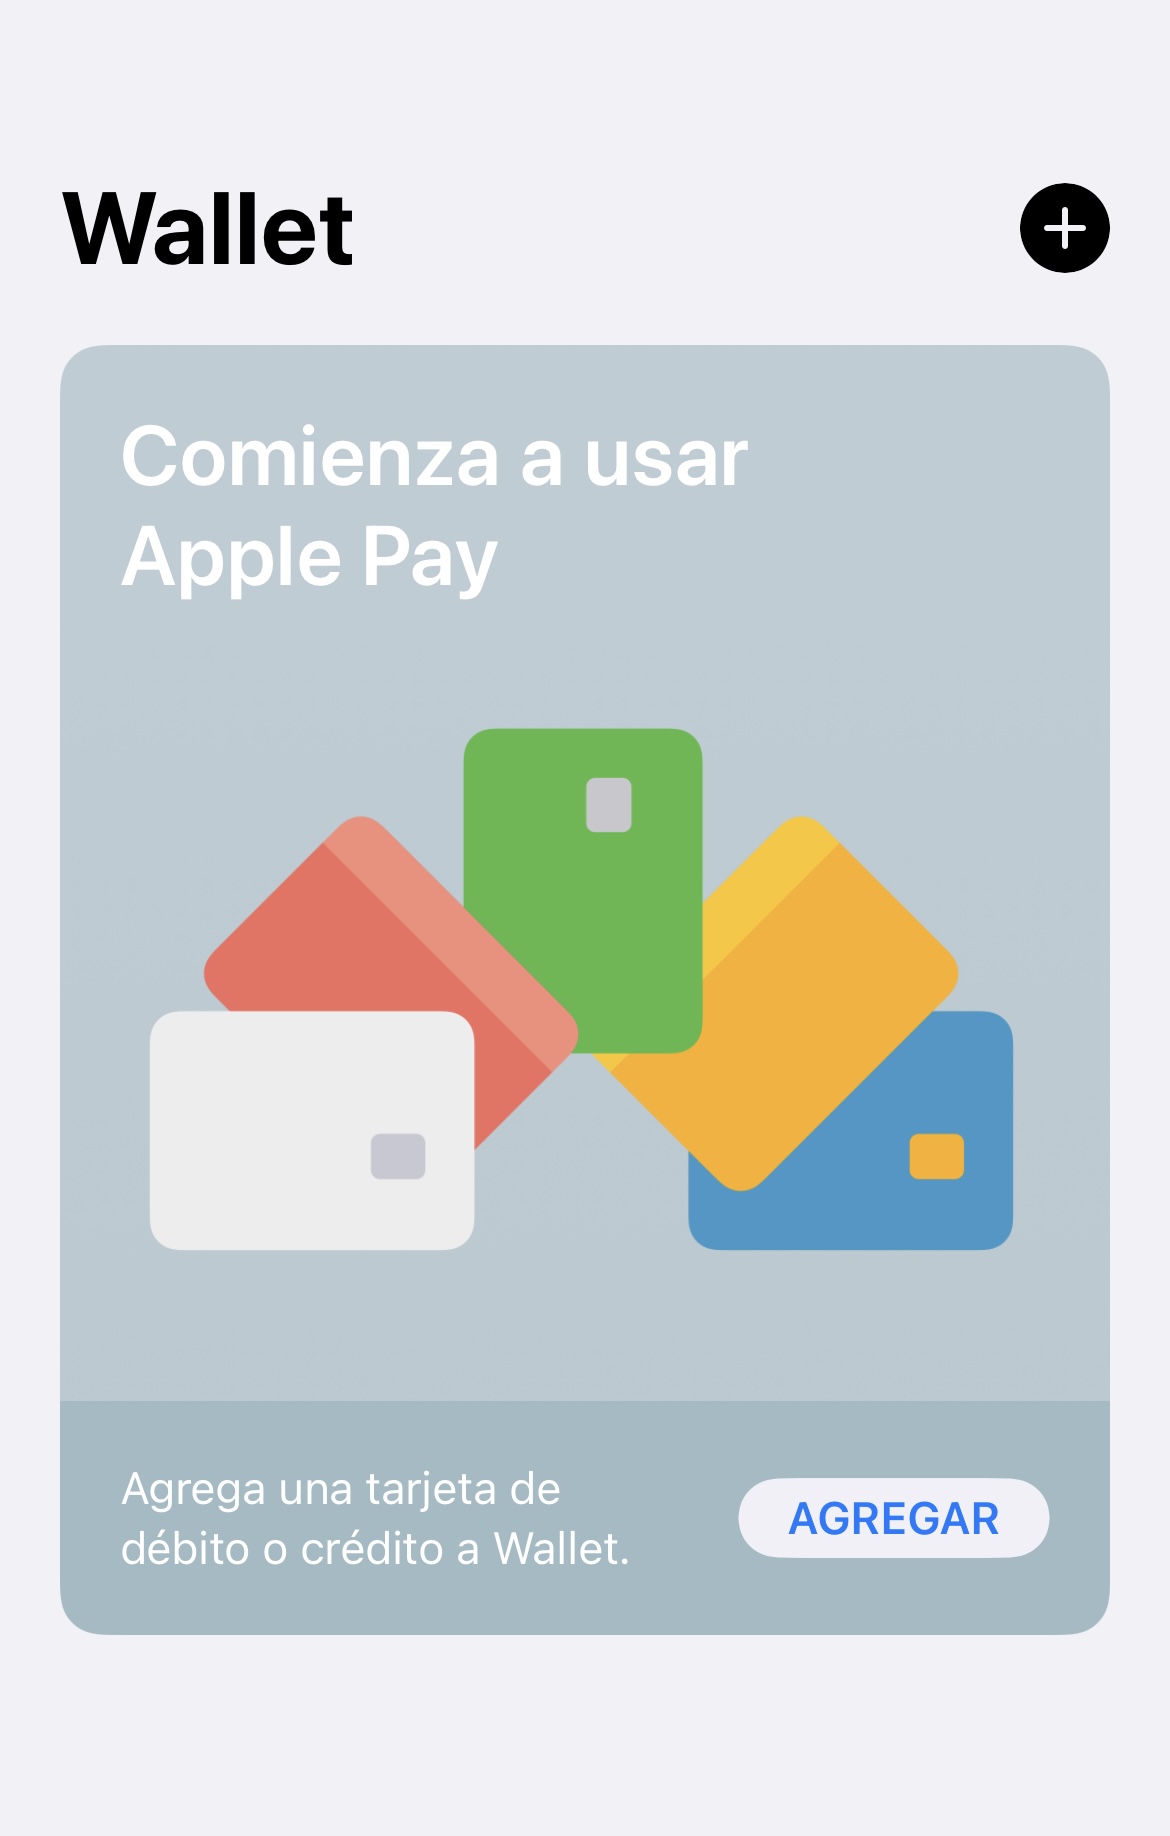 Apple Pay llega a México:  ¿Cómo funciona y cómo puedo empezar a usarlo?